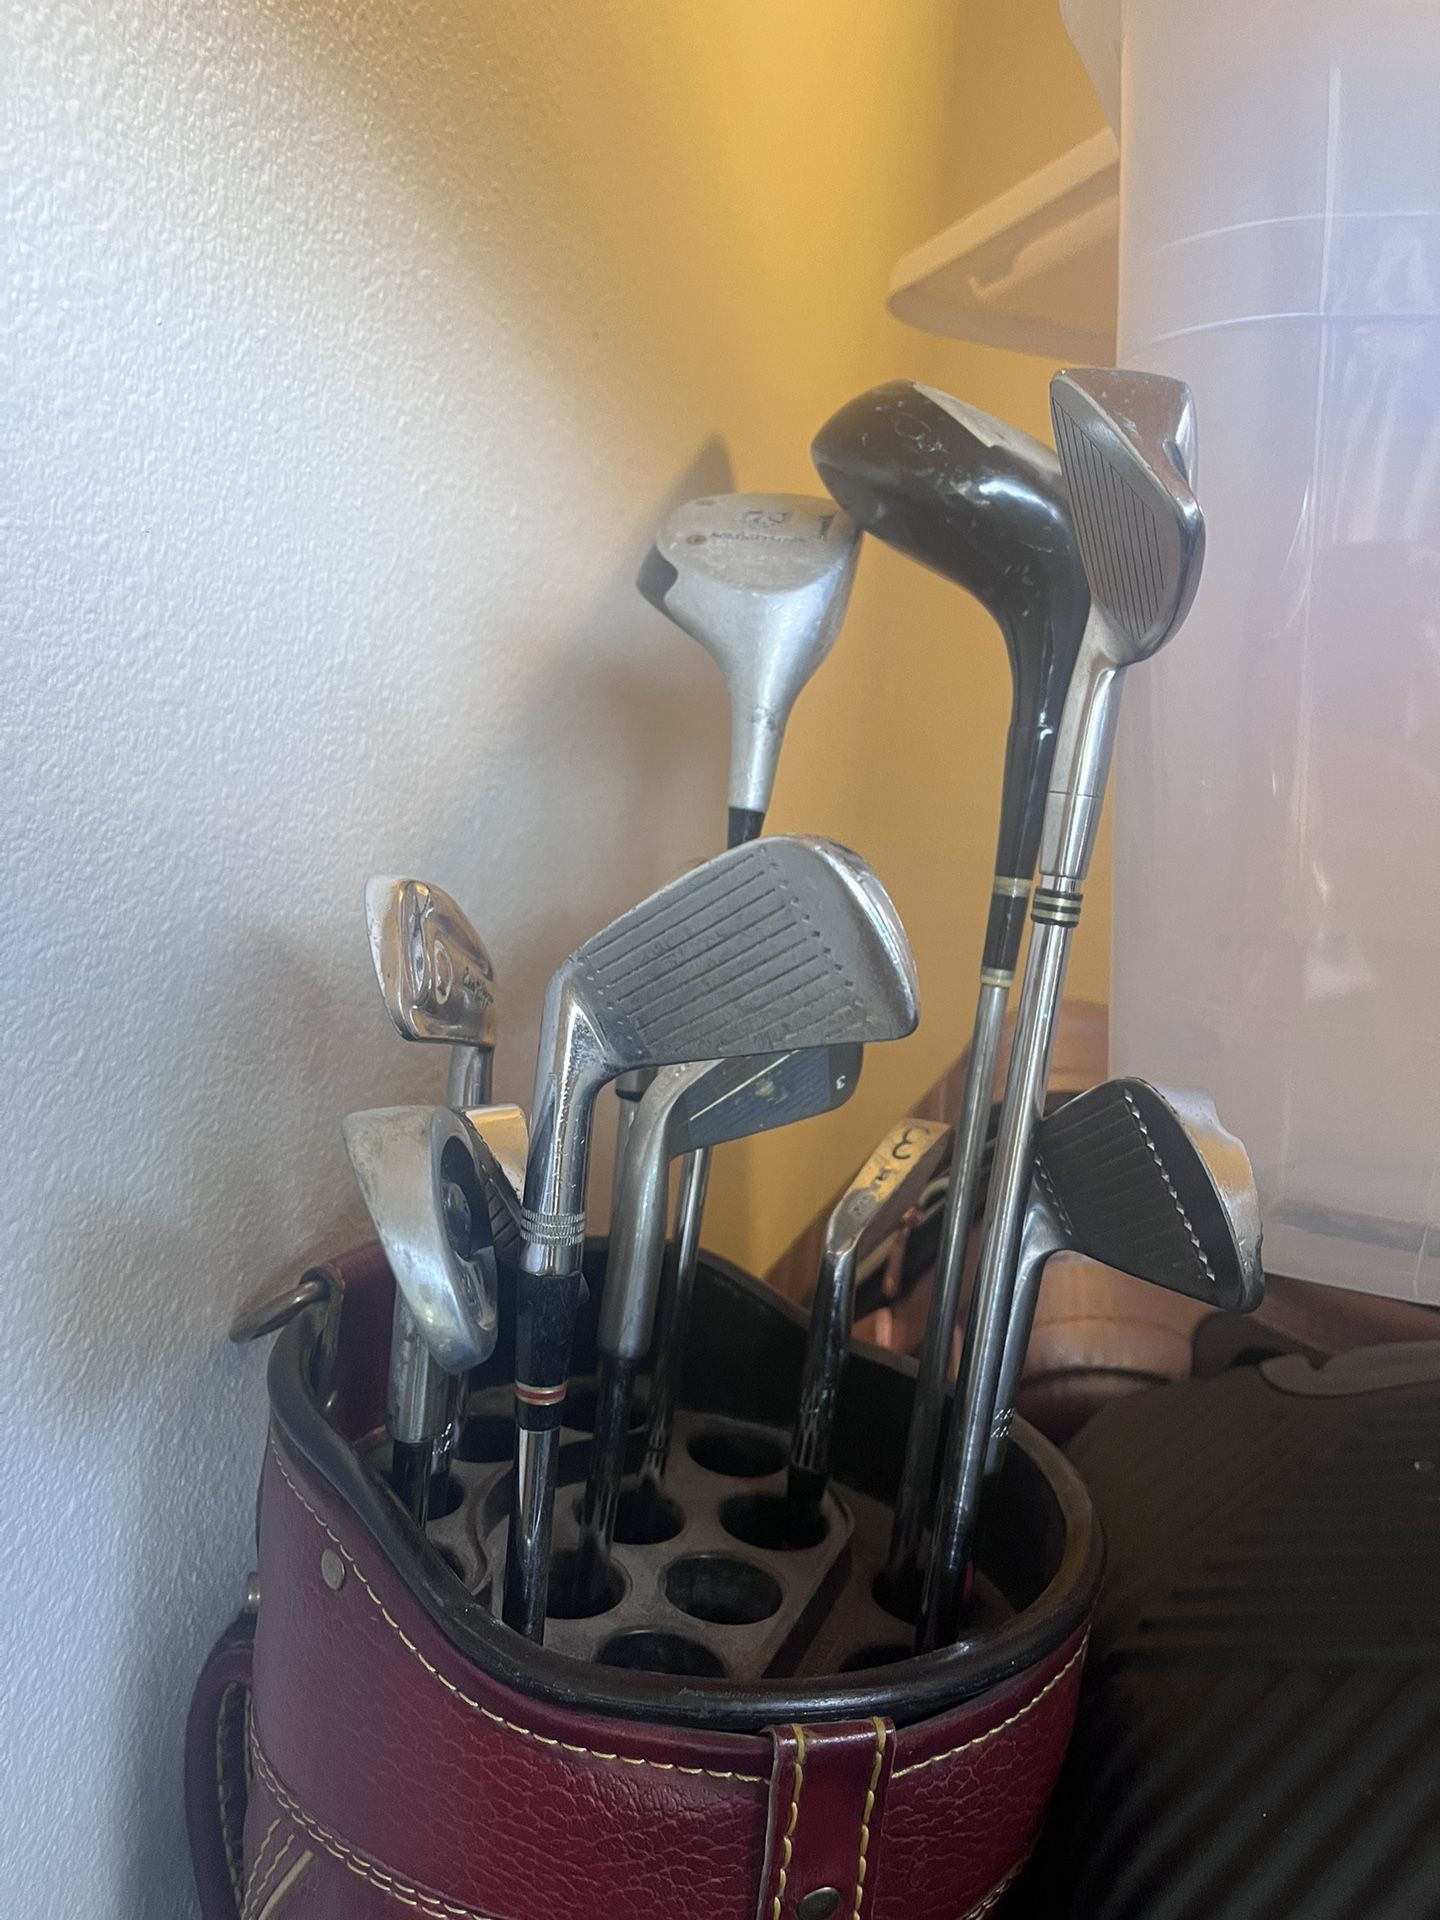 Golf Clubs Mix Set And Bag